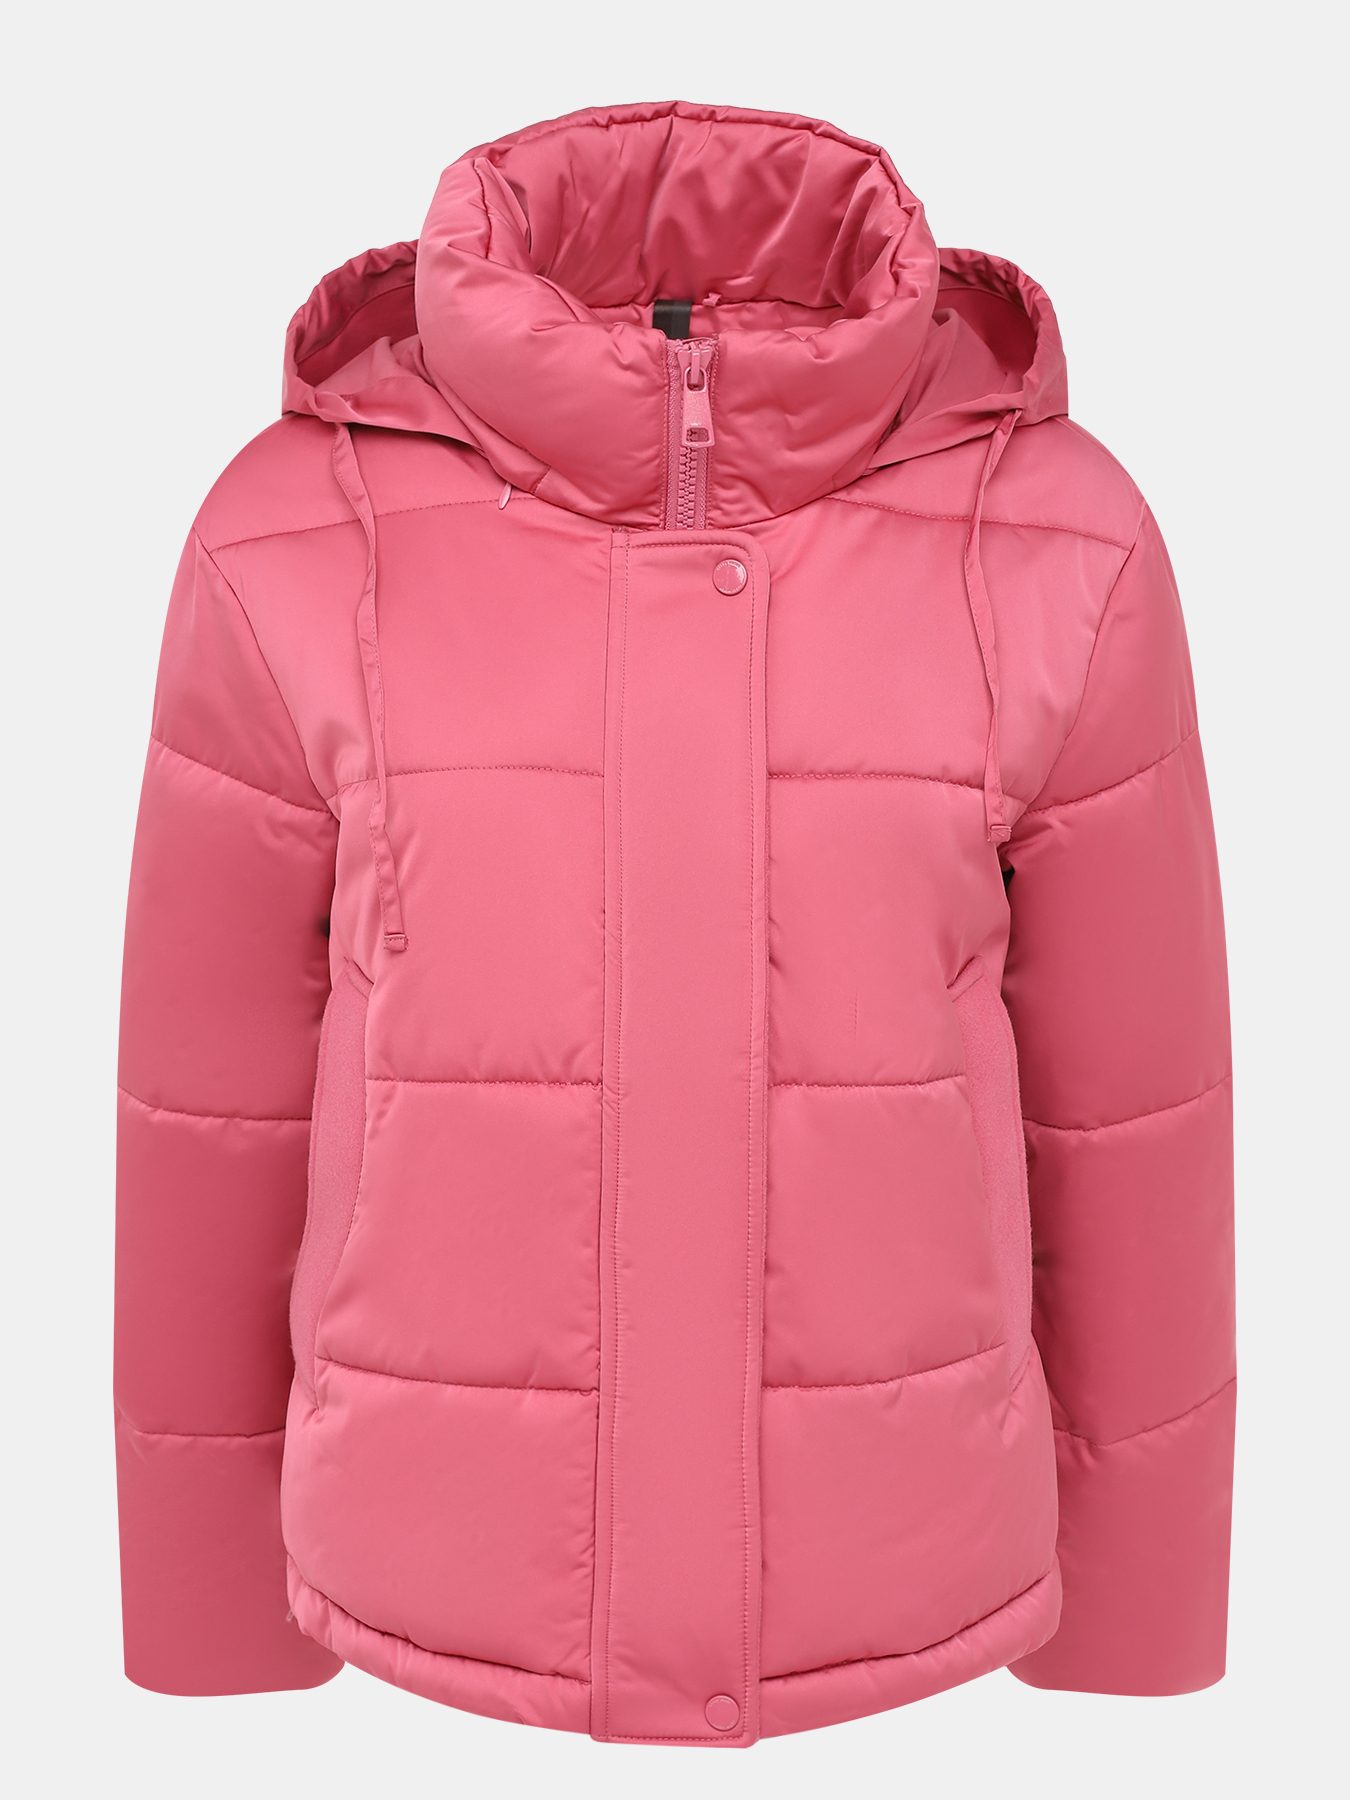 Куртка Gerry Weber 427708-020, цвет розовый, размер 44